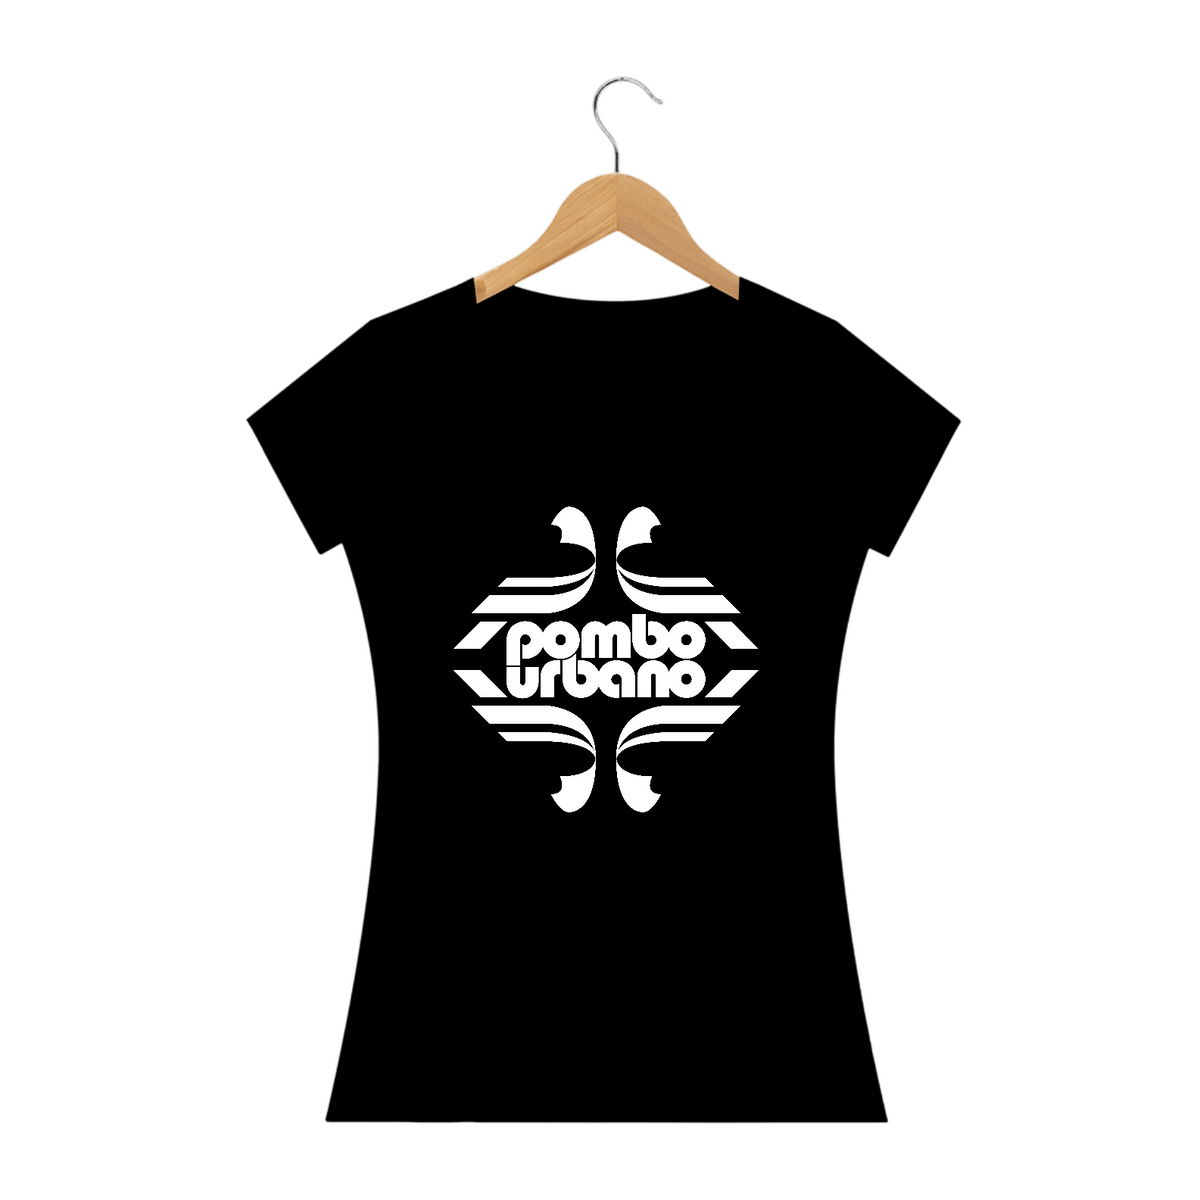 Nome do produto: Pombo Urbano - Camiseta Feminina